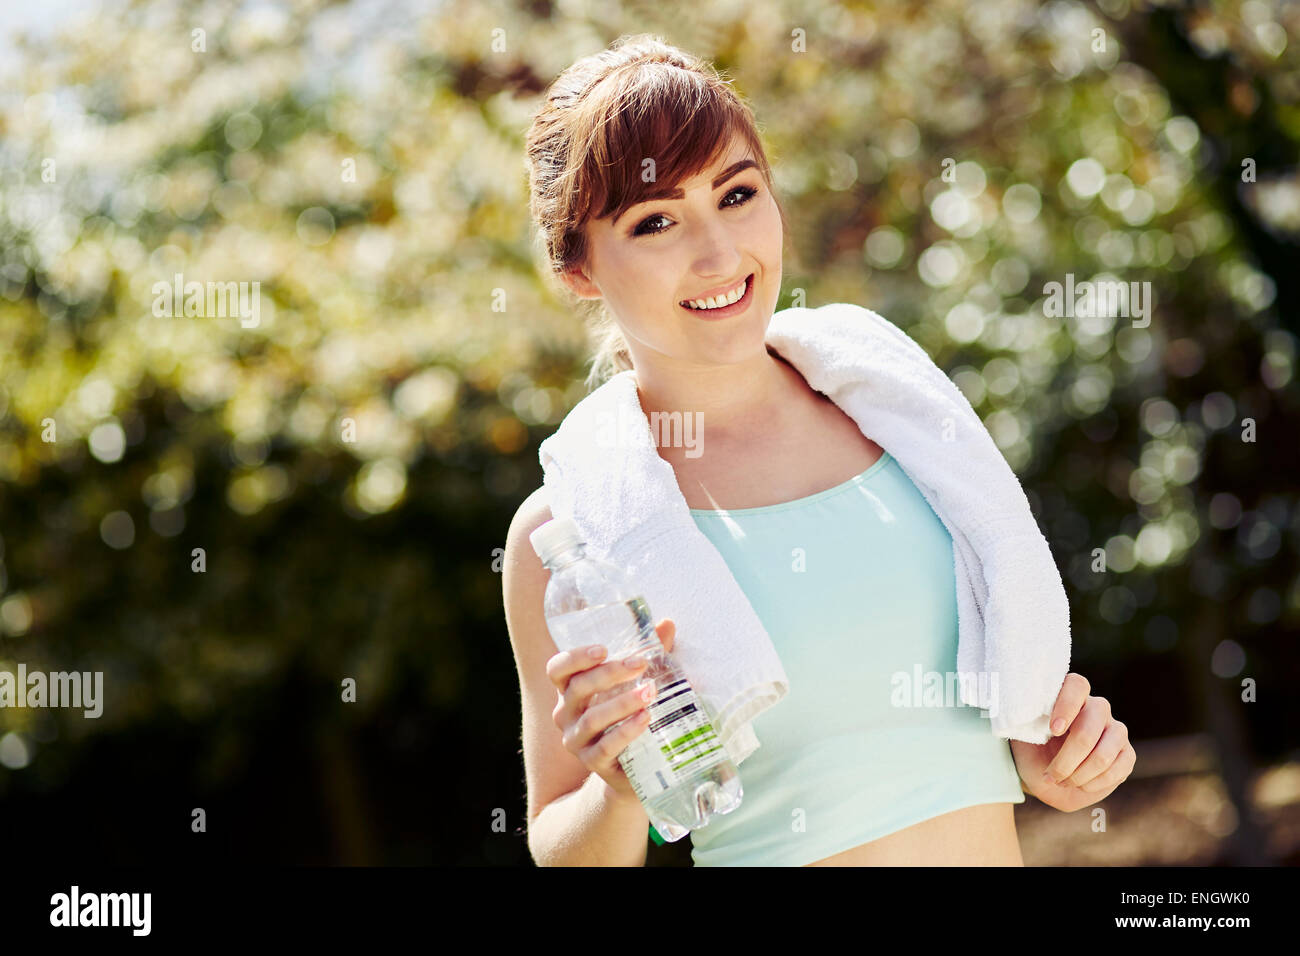 Belle jeune fille tenant une bouteille d'eau après l'entraînement Banque D'Images